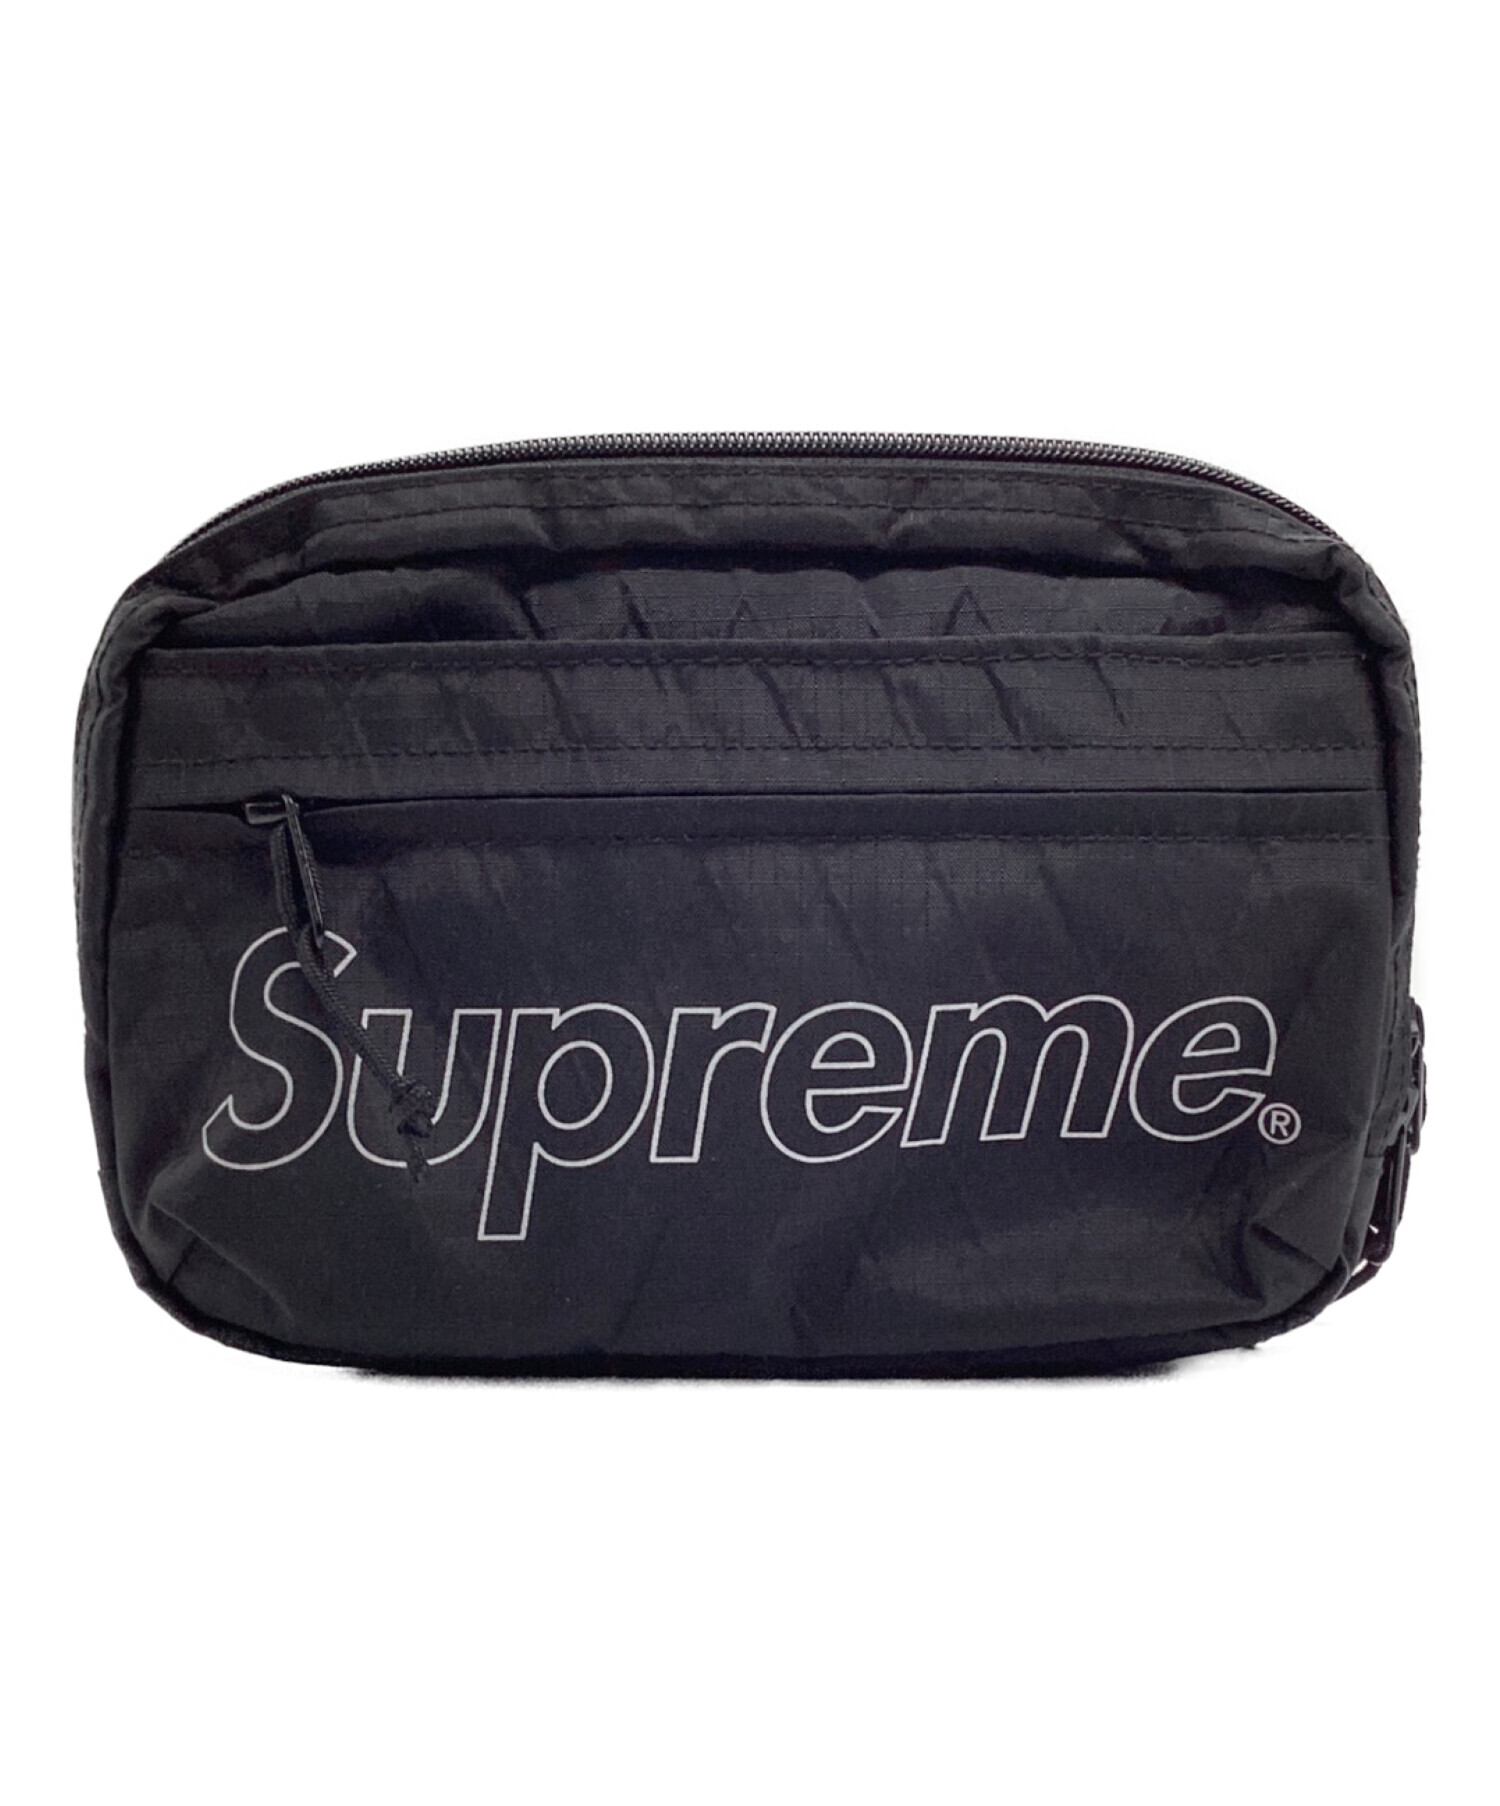 supreme 18AW Shoulder Bag   Black